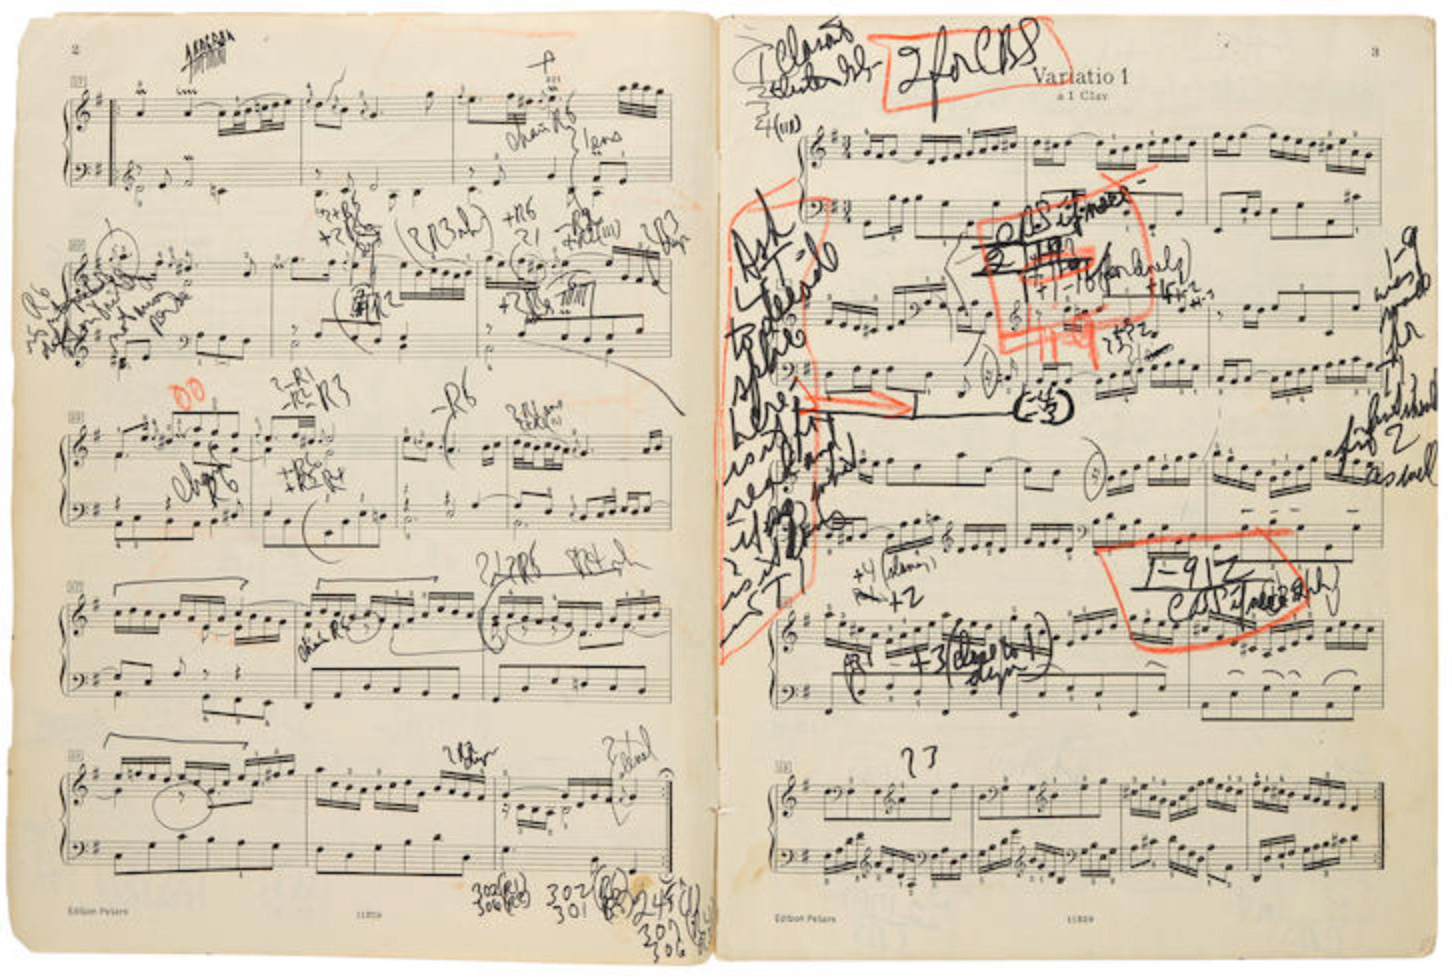 Glenn Gould score for Bach's Goldberg Variations (1st variation)